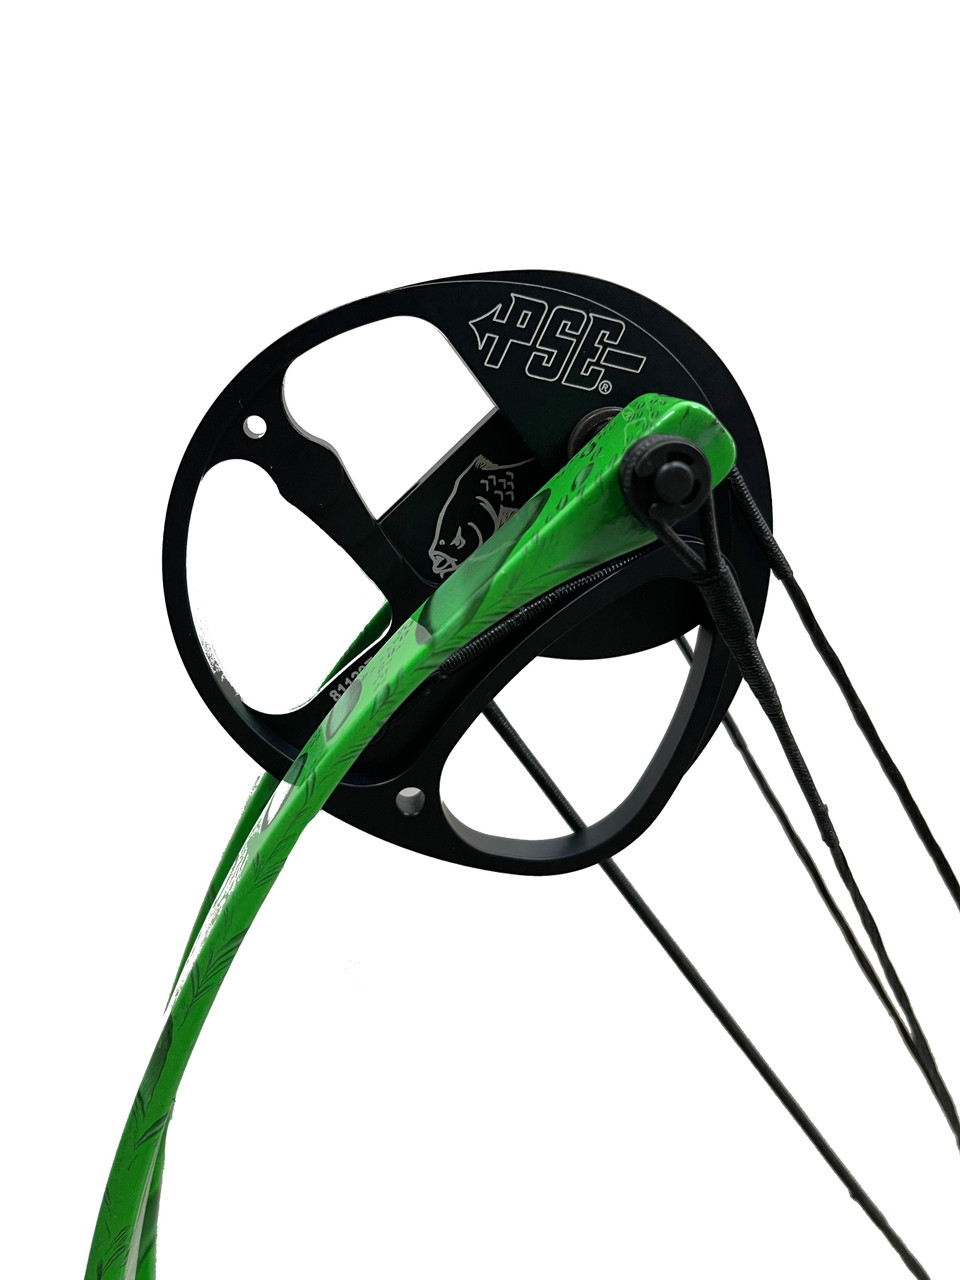 PSE Mudd Dawg Bowfishing Package 30-40# RH Green Water Drop w/ Reel Kit -  Mike's Archery